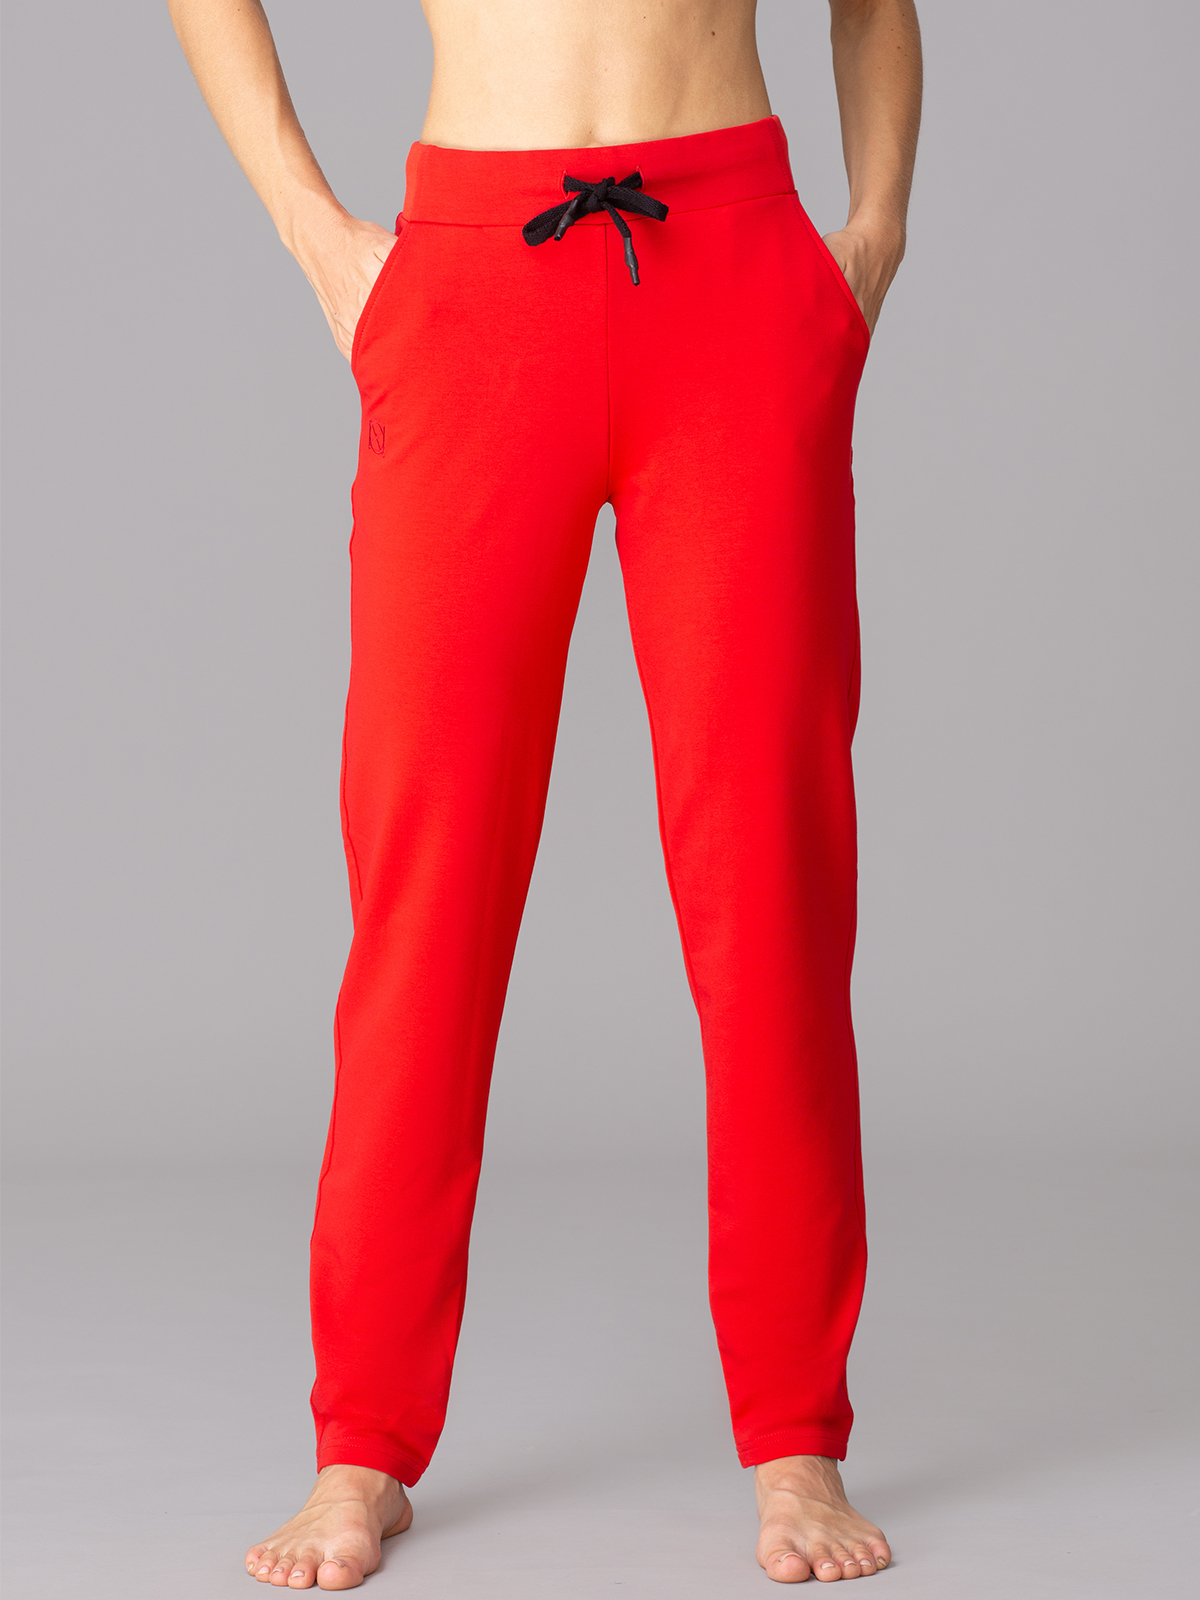 Брюки Oxouno OXO 2384-485 спортивные брюки размер XL, красный (Красный)